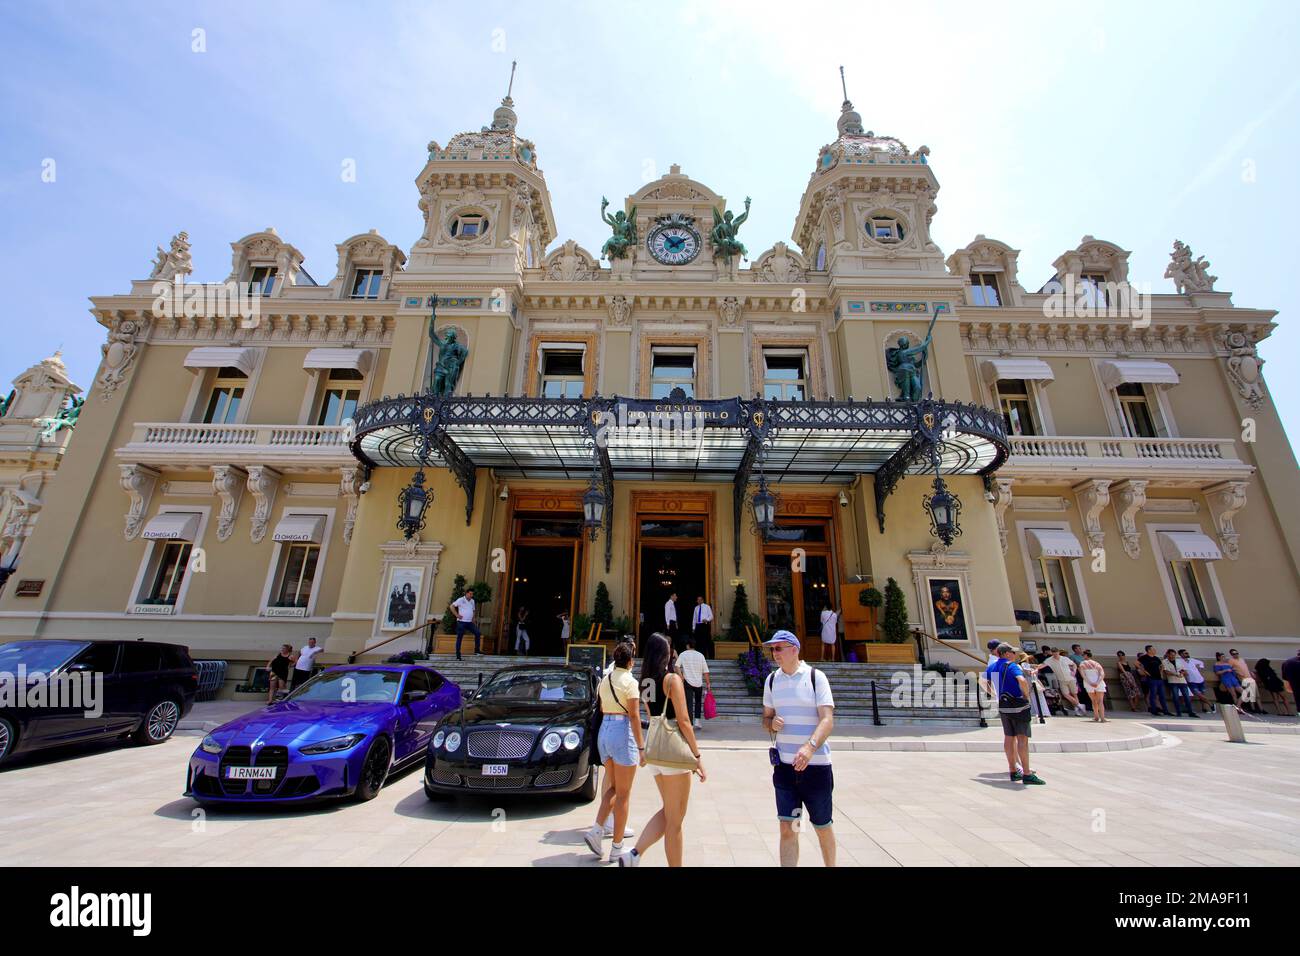 MONTE CARLO, MONACO - JUNE 18, 2022: Monte-Carlo Casino and luxury cars in Monte Carlo, Monaco Stock Photo